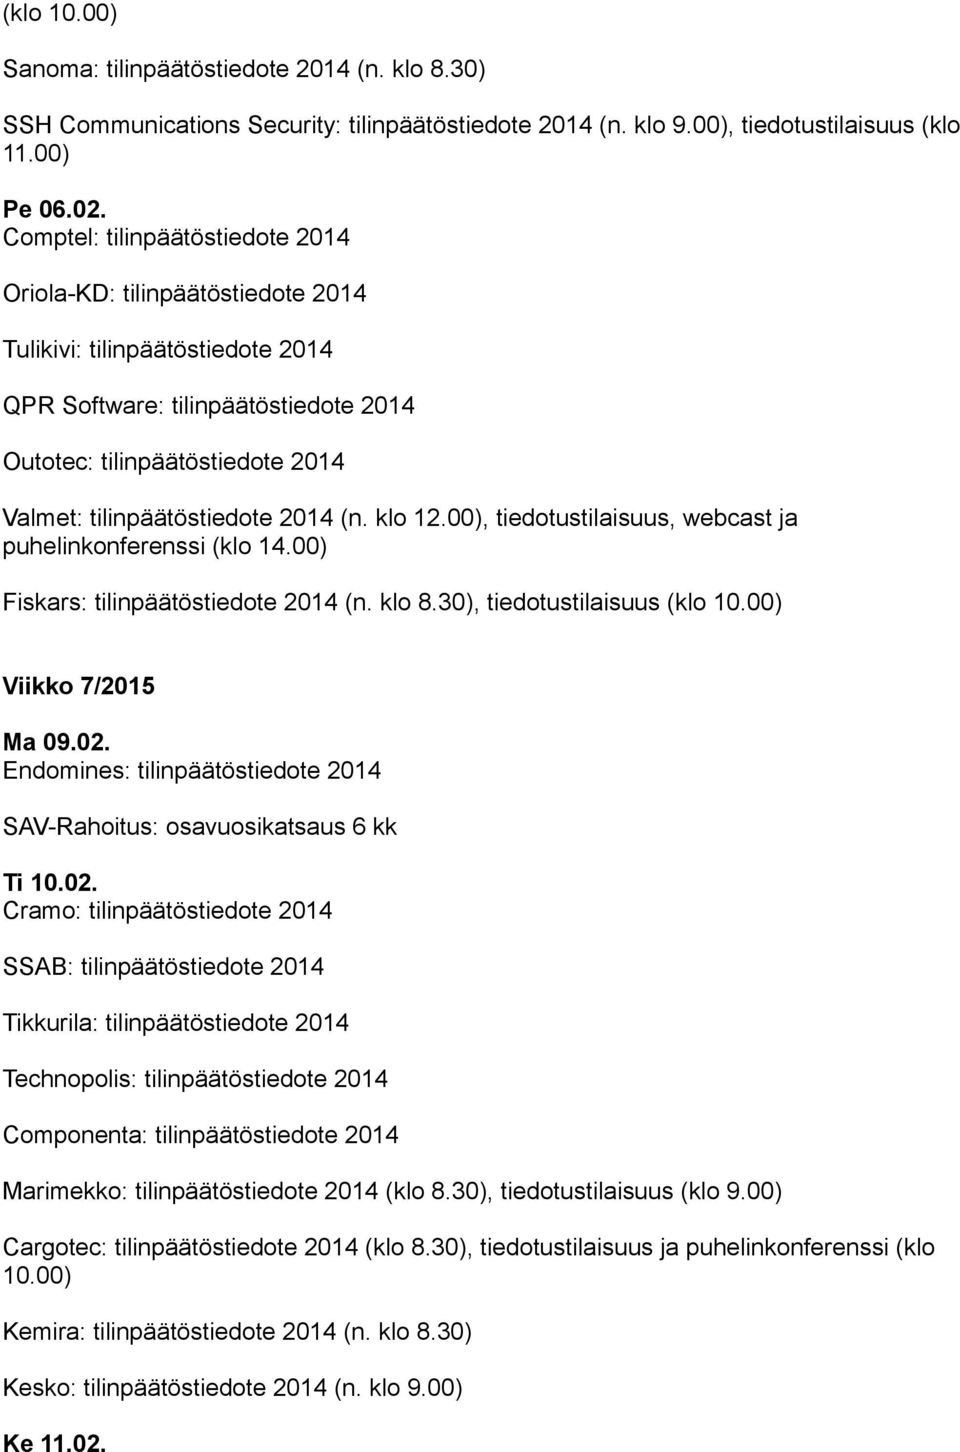 2014 (n. klo 12.00), tiedotustilaisuus, webcast ja puhelinkonferenssi (klo 14.00) Fiskars: tilinpäätöstiedote 2014 (n. klo 8.30), tiedotustilaisuus (klo 10.00) Viikko 7/2015 Ma 09.02.